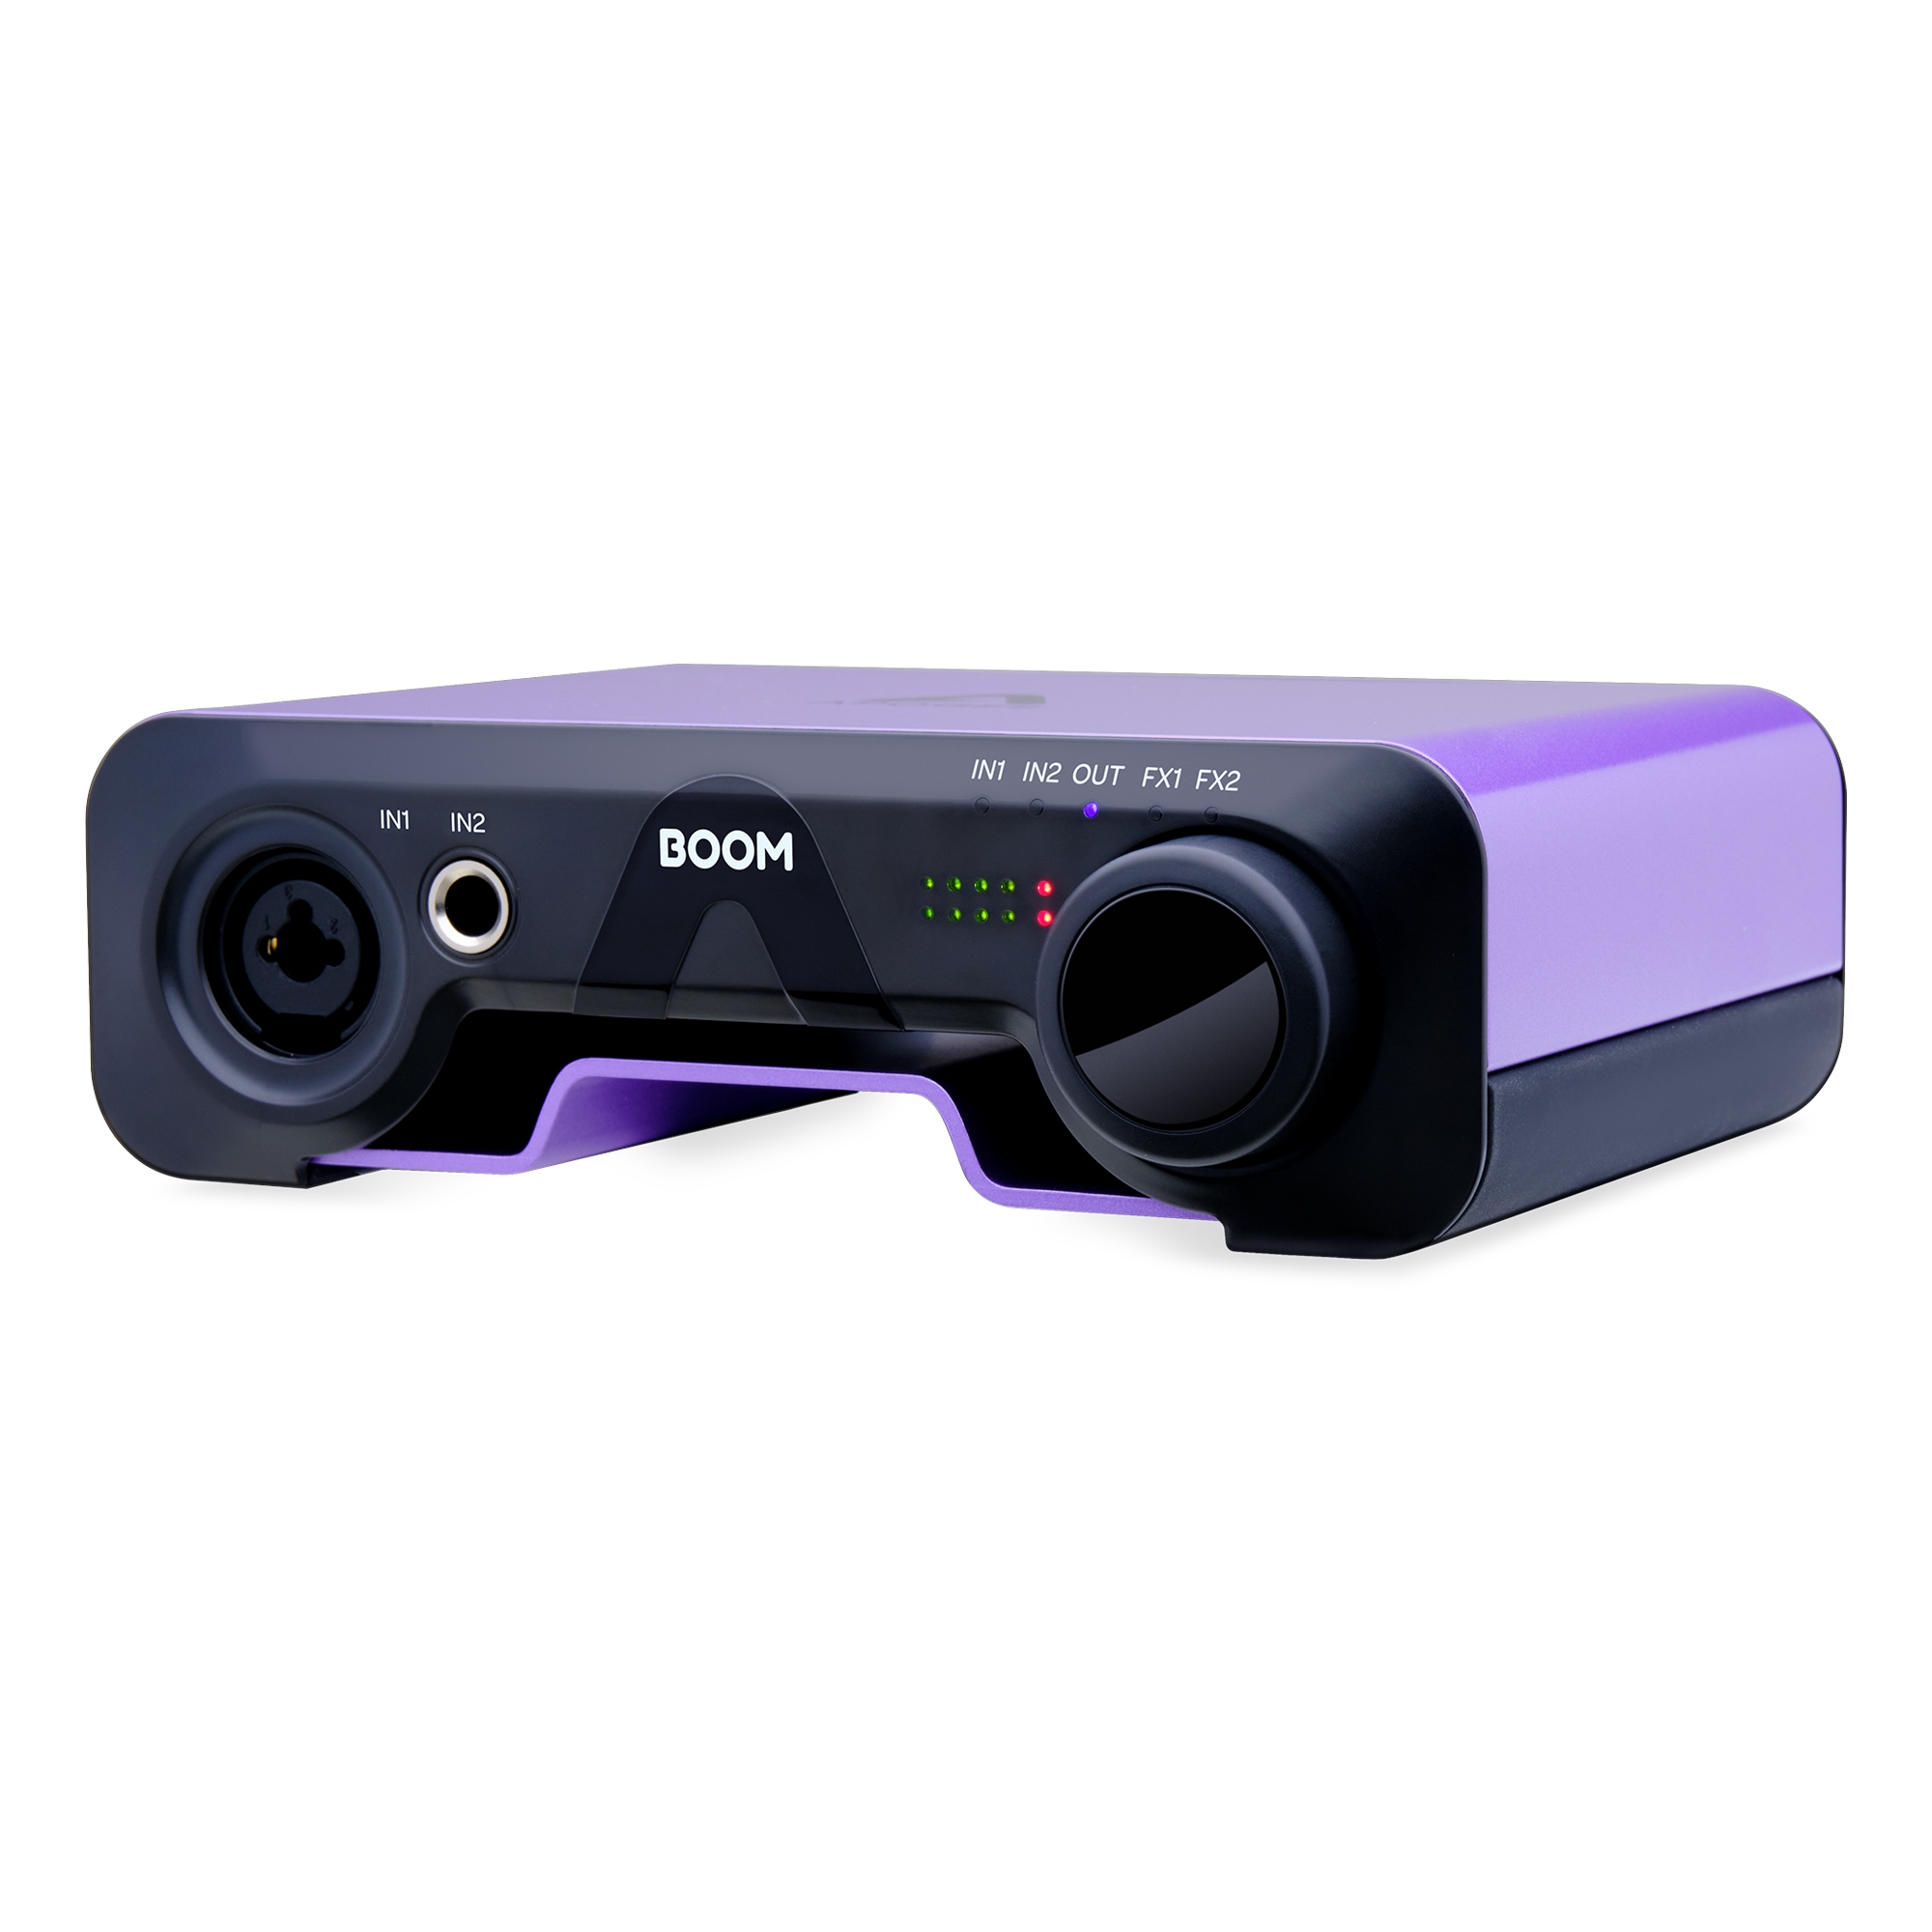 IK Multimedia agrega más valor a todas sus líneas de productos de hardware  – Audio Música Digital